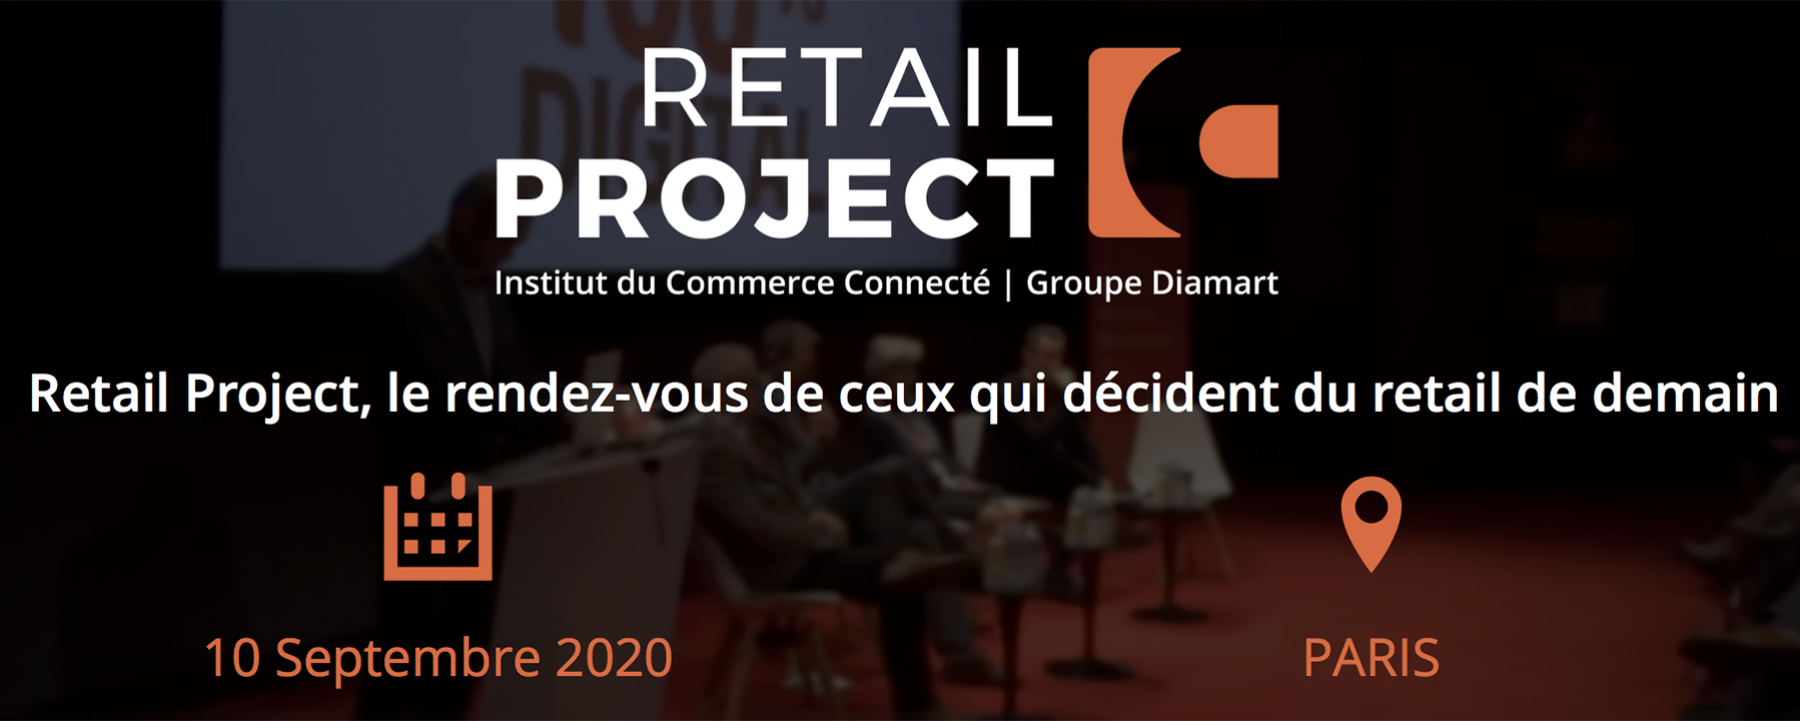 Retail Project 2020, un événement organisé par L'institut du Commerce Connecté, le 10 septembre 